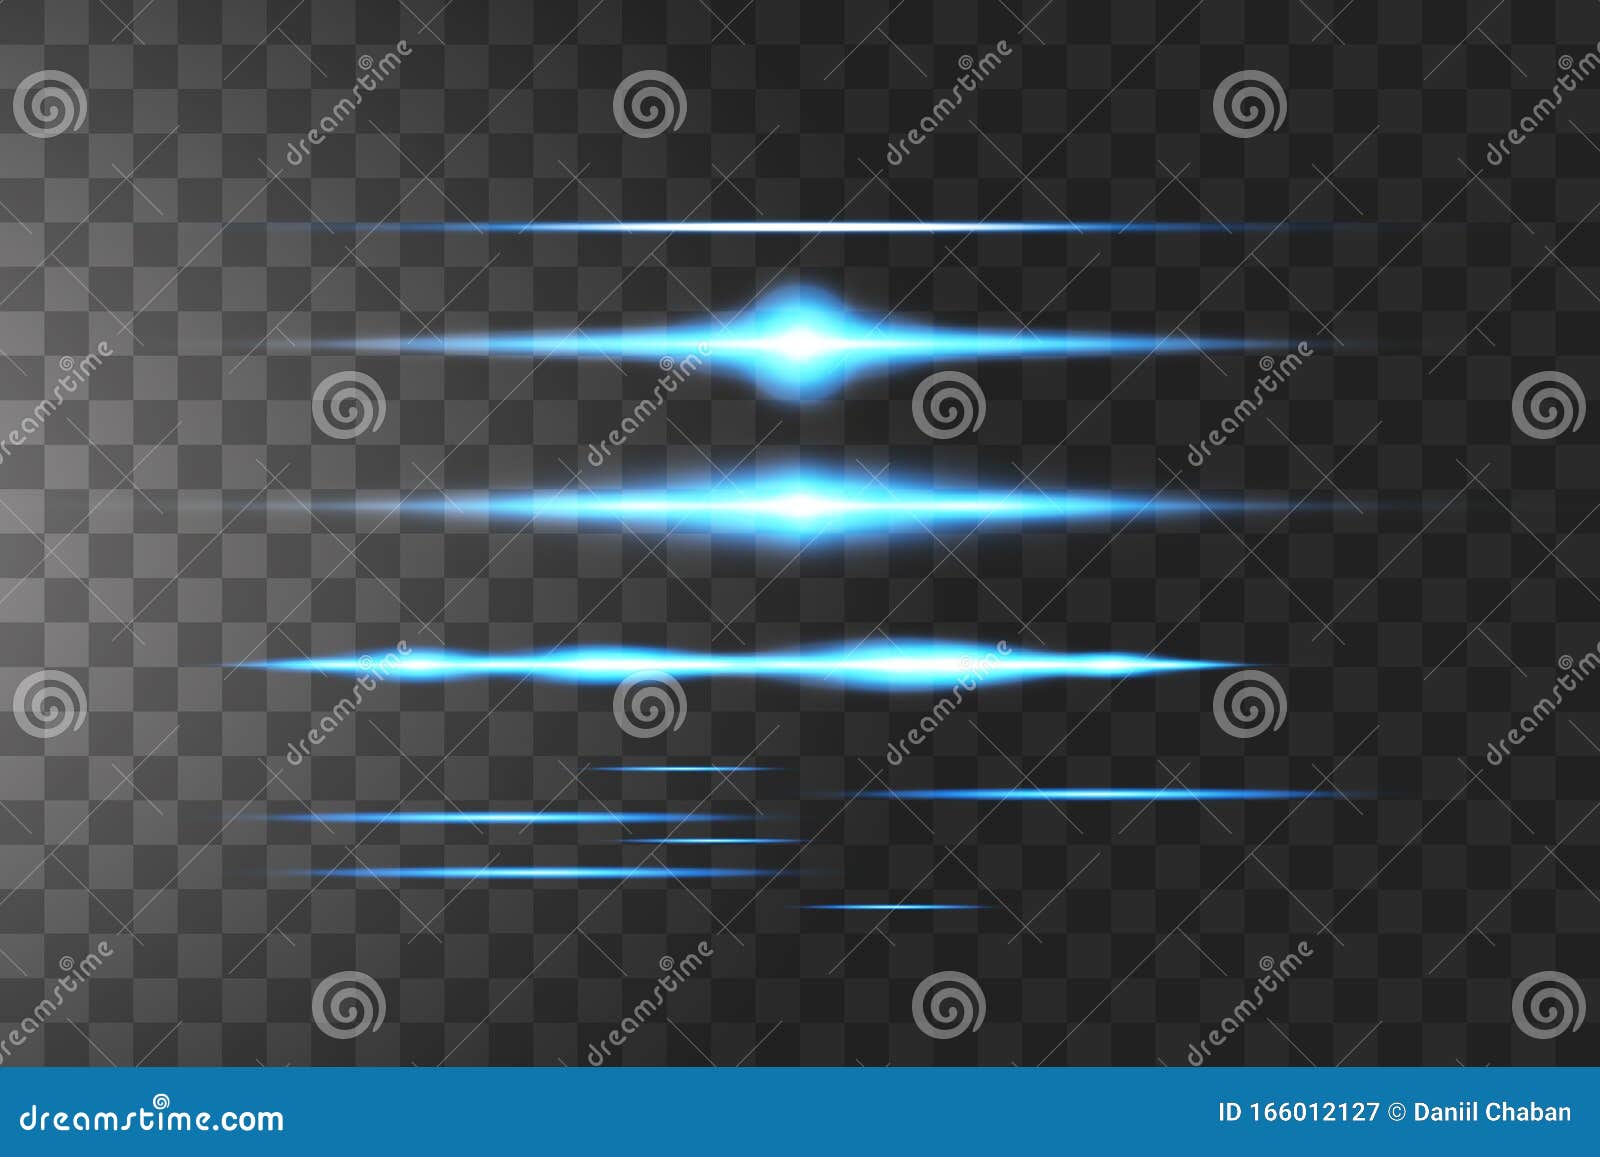 blue horizontal lens flares pack. laser beams, horizontal light rays.beautiful light flares. glowing streaks on dark